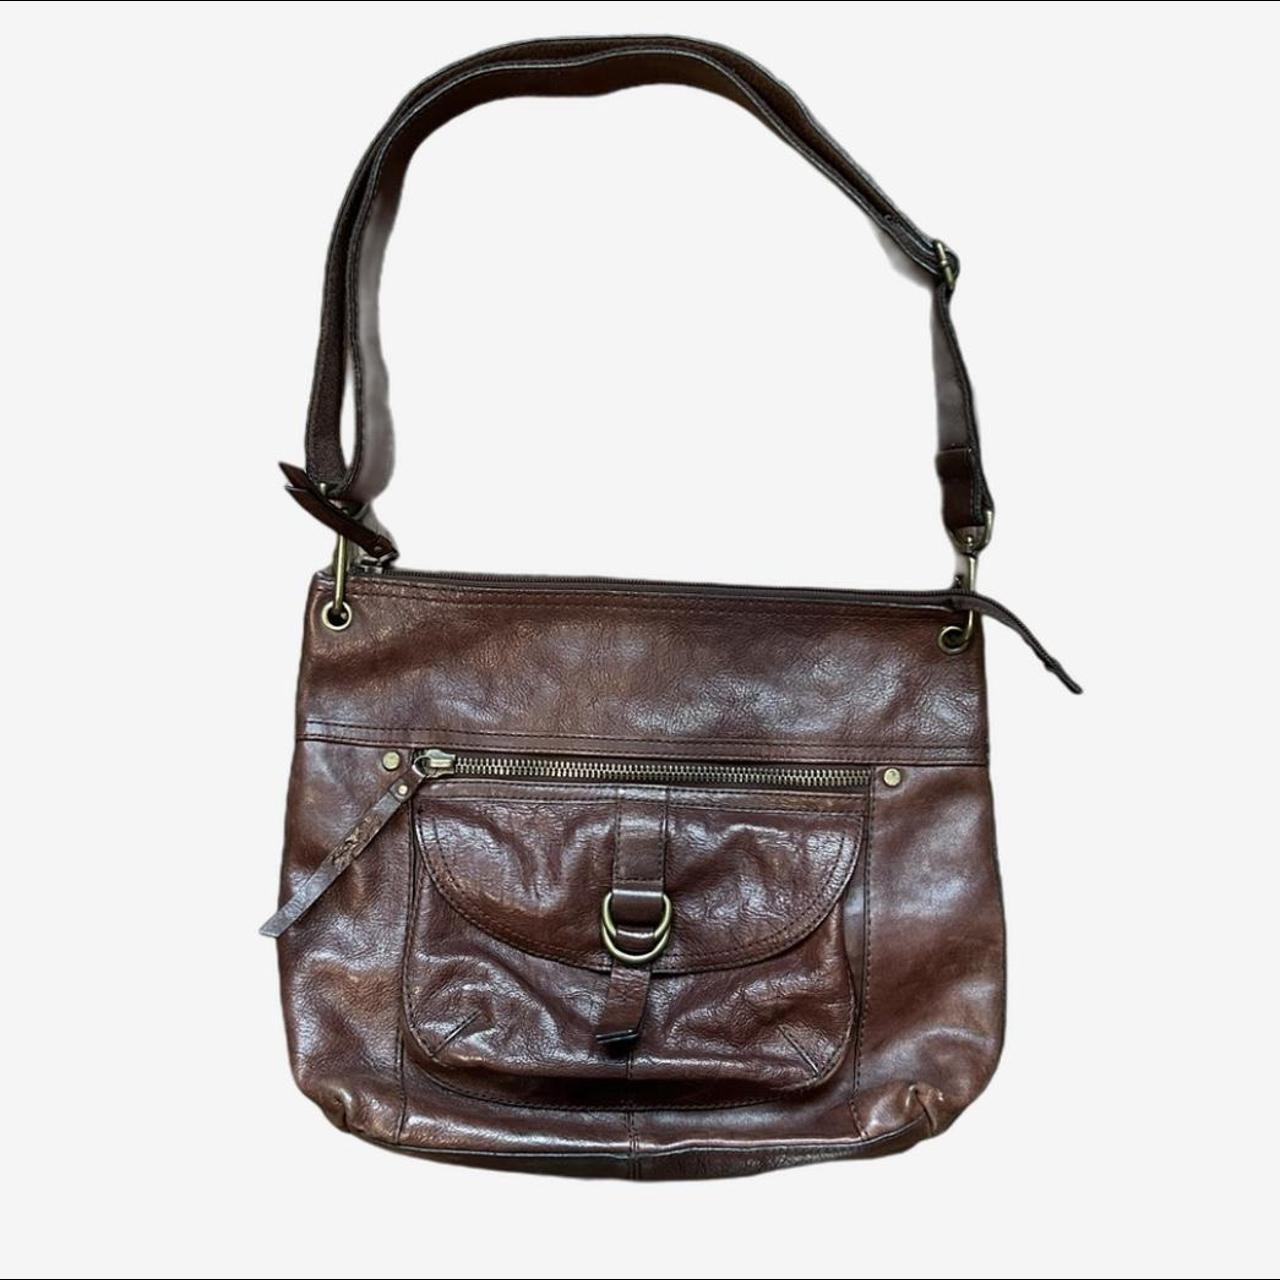 warm brown leather fossil shoulder bag SALE ENDS... - Depop